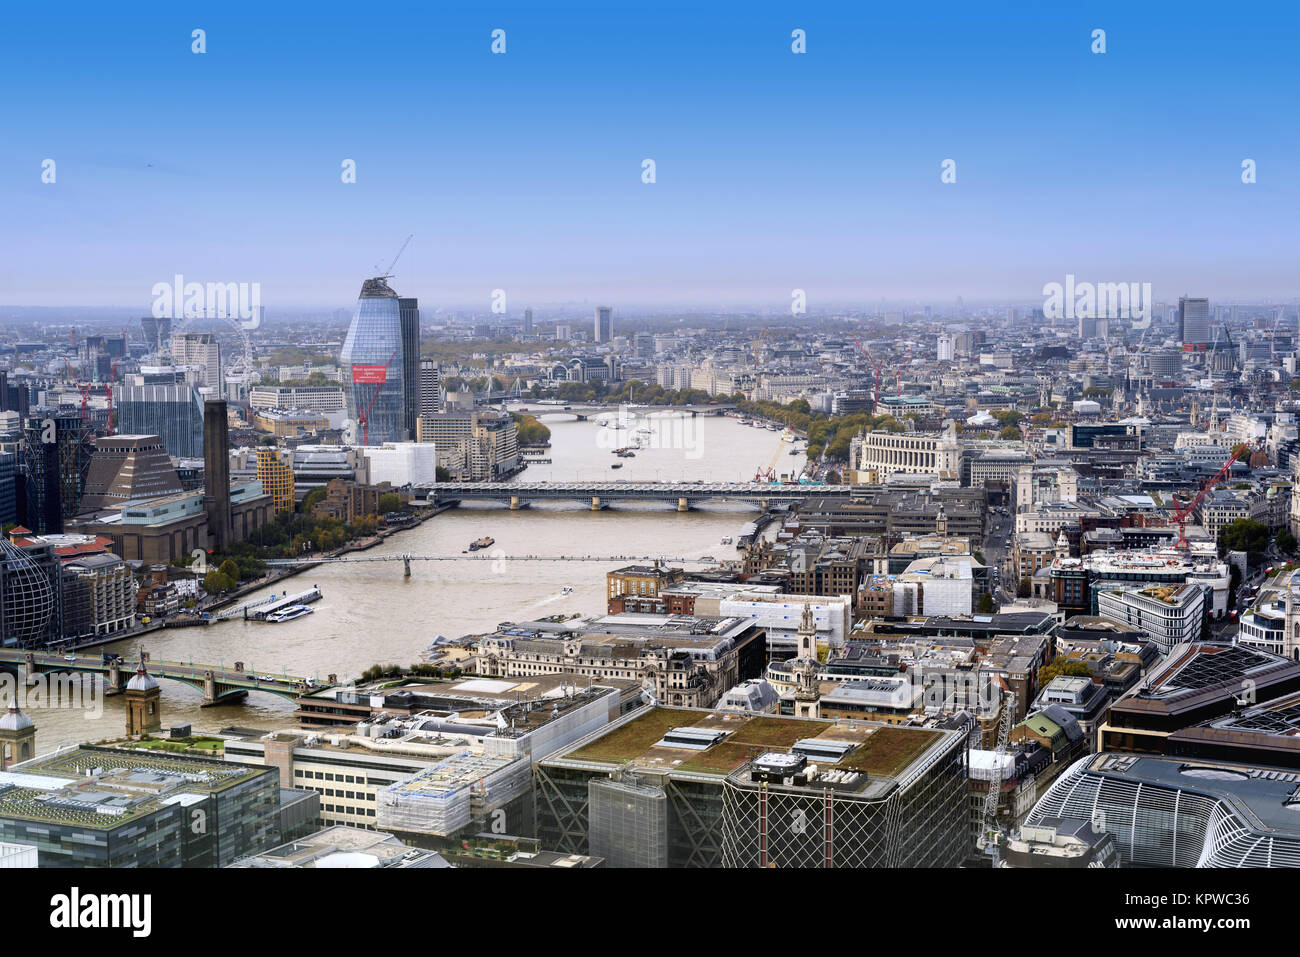 Les toits de la ville de Londres en Angleterre pendant la journée avec des bâtiments et des sites célèbres de la Tamise et de la Tate Modern Banque D'Images